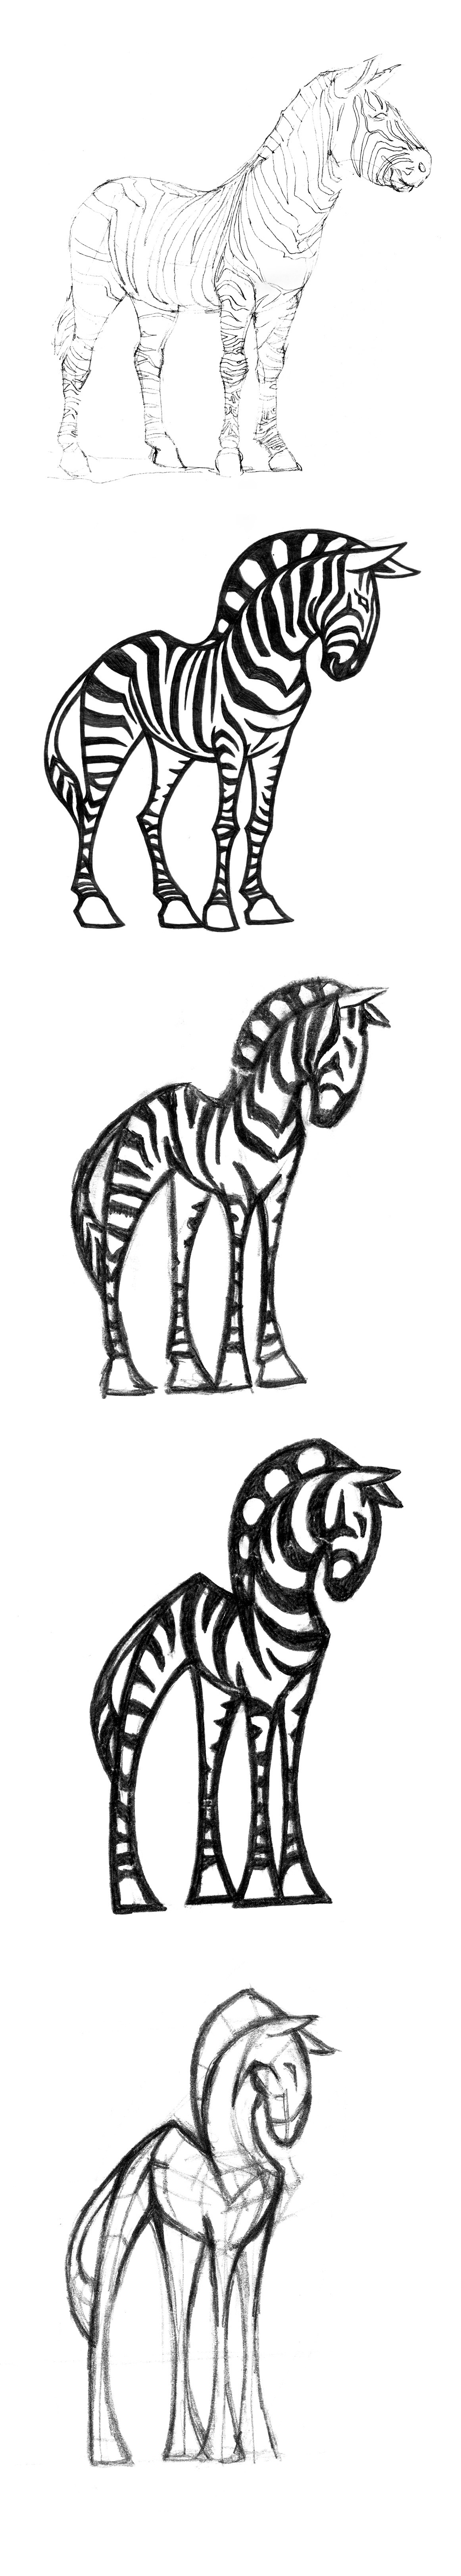 animal zebra rino lion animais pictograms pictogramas zoo girafe girafa orix hipo camel elefant tiger